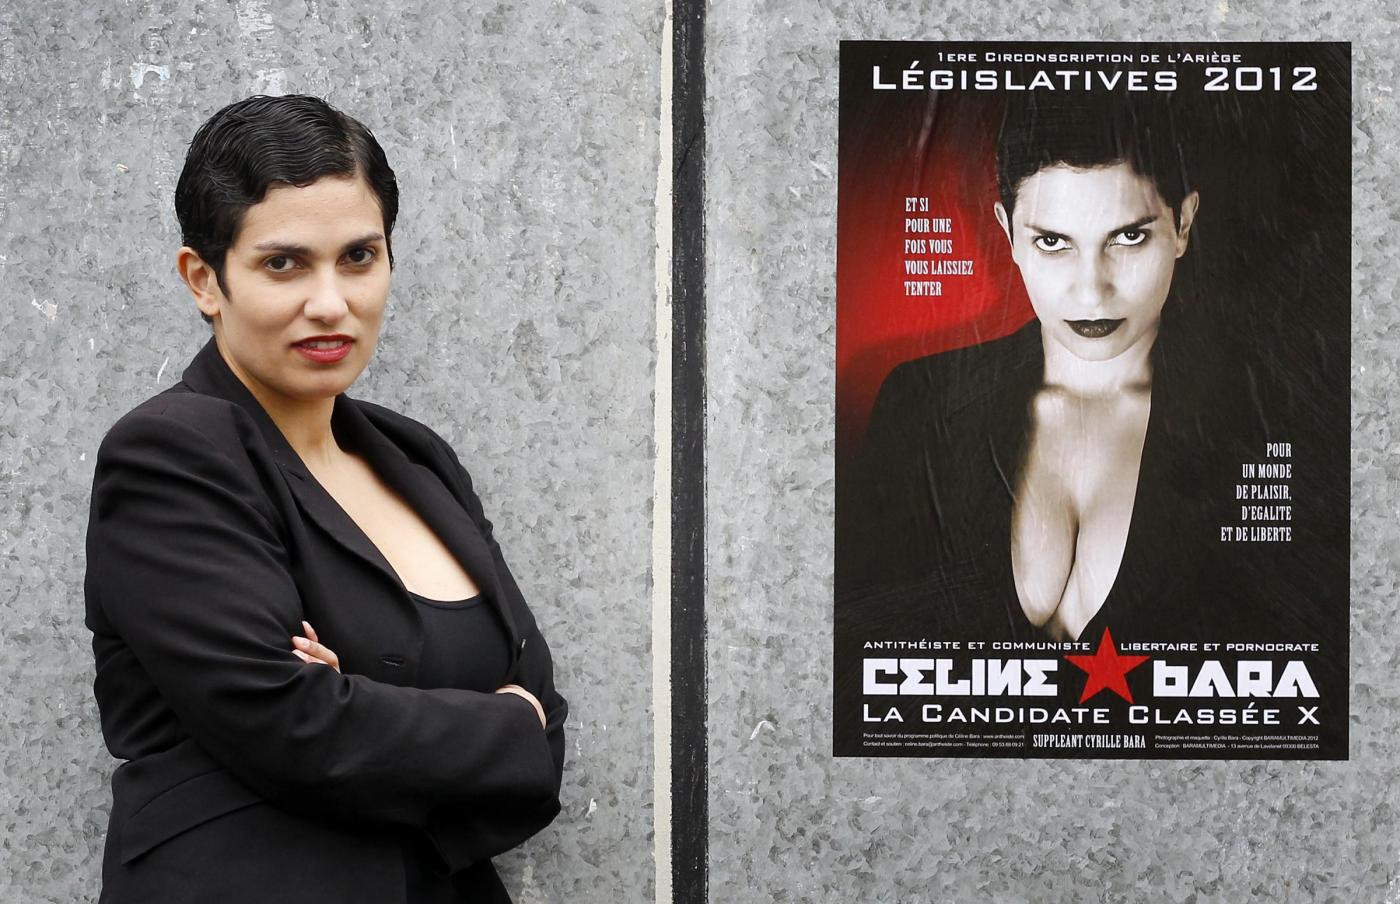 Celin Bara star porno si candida alle legislative10